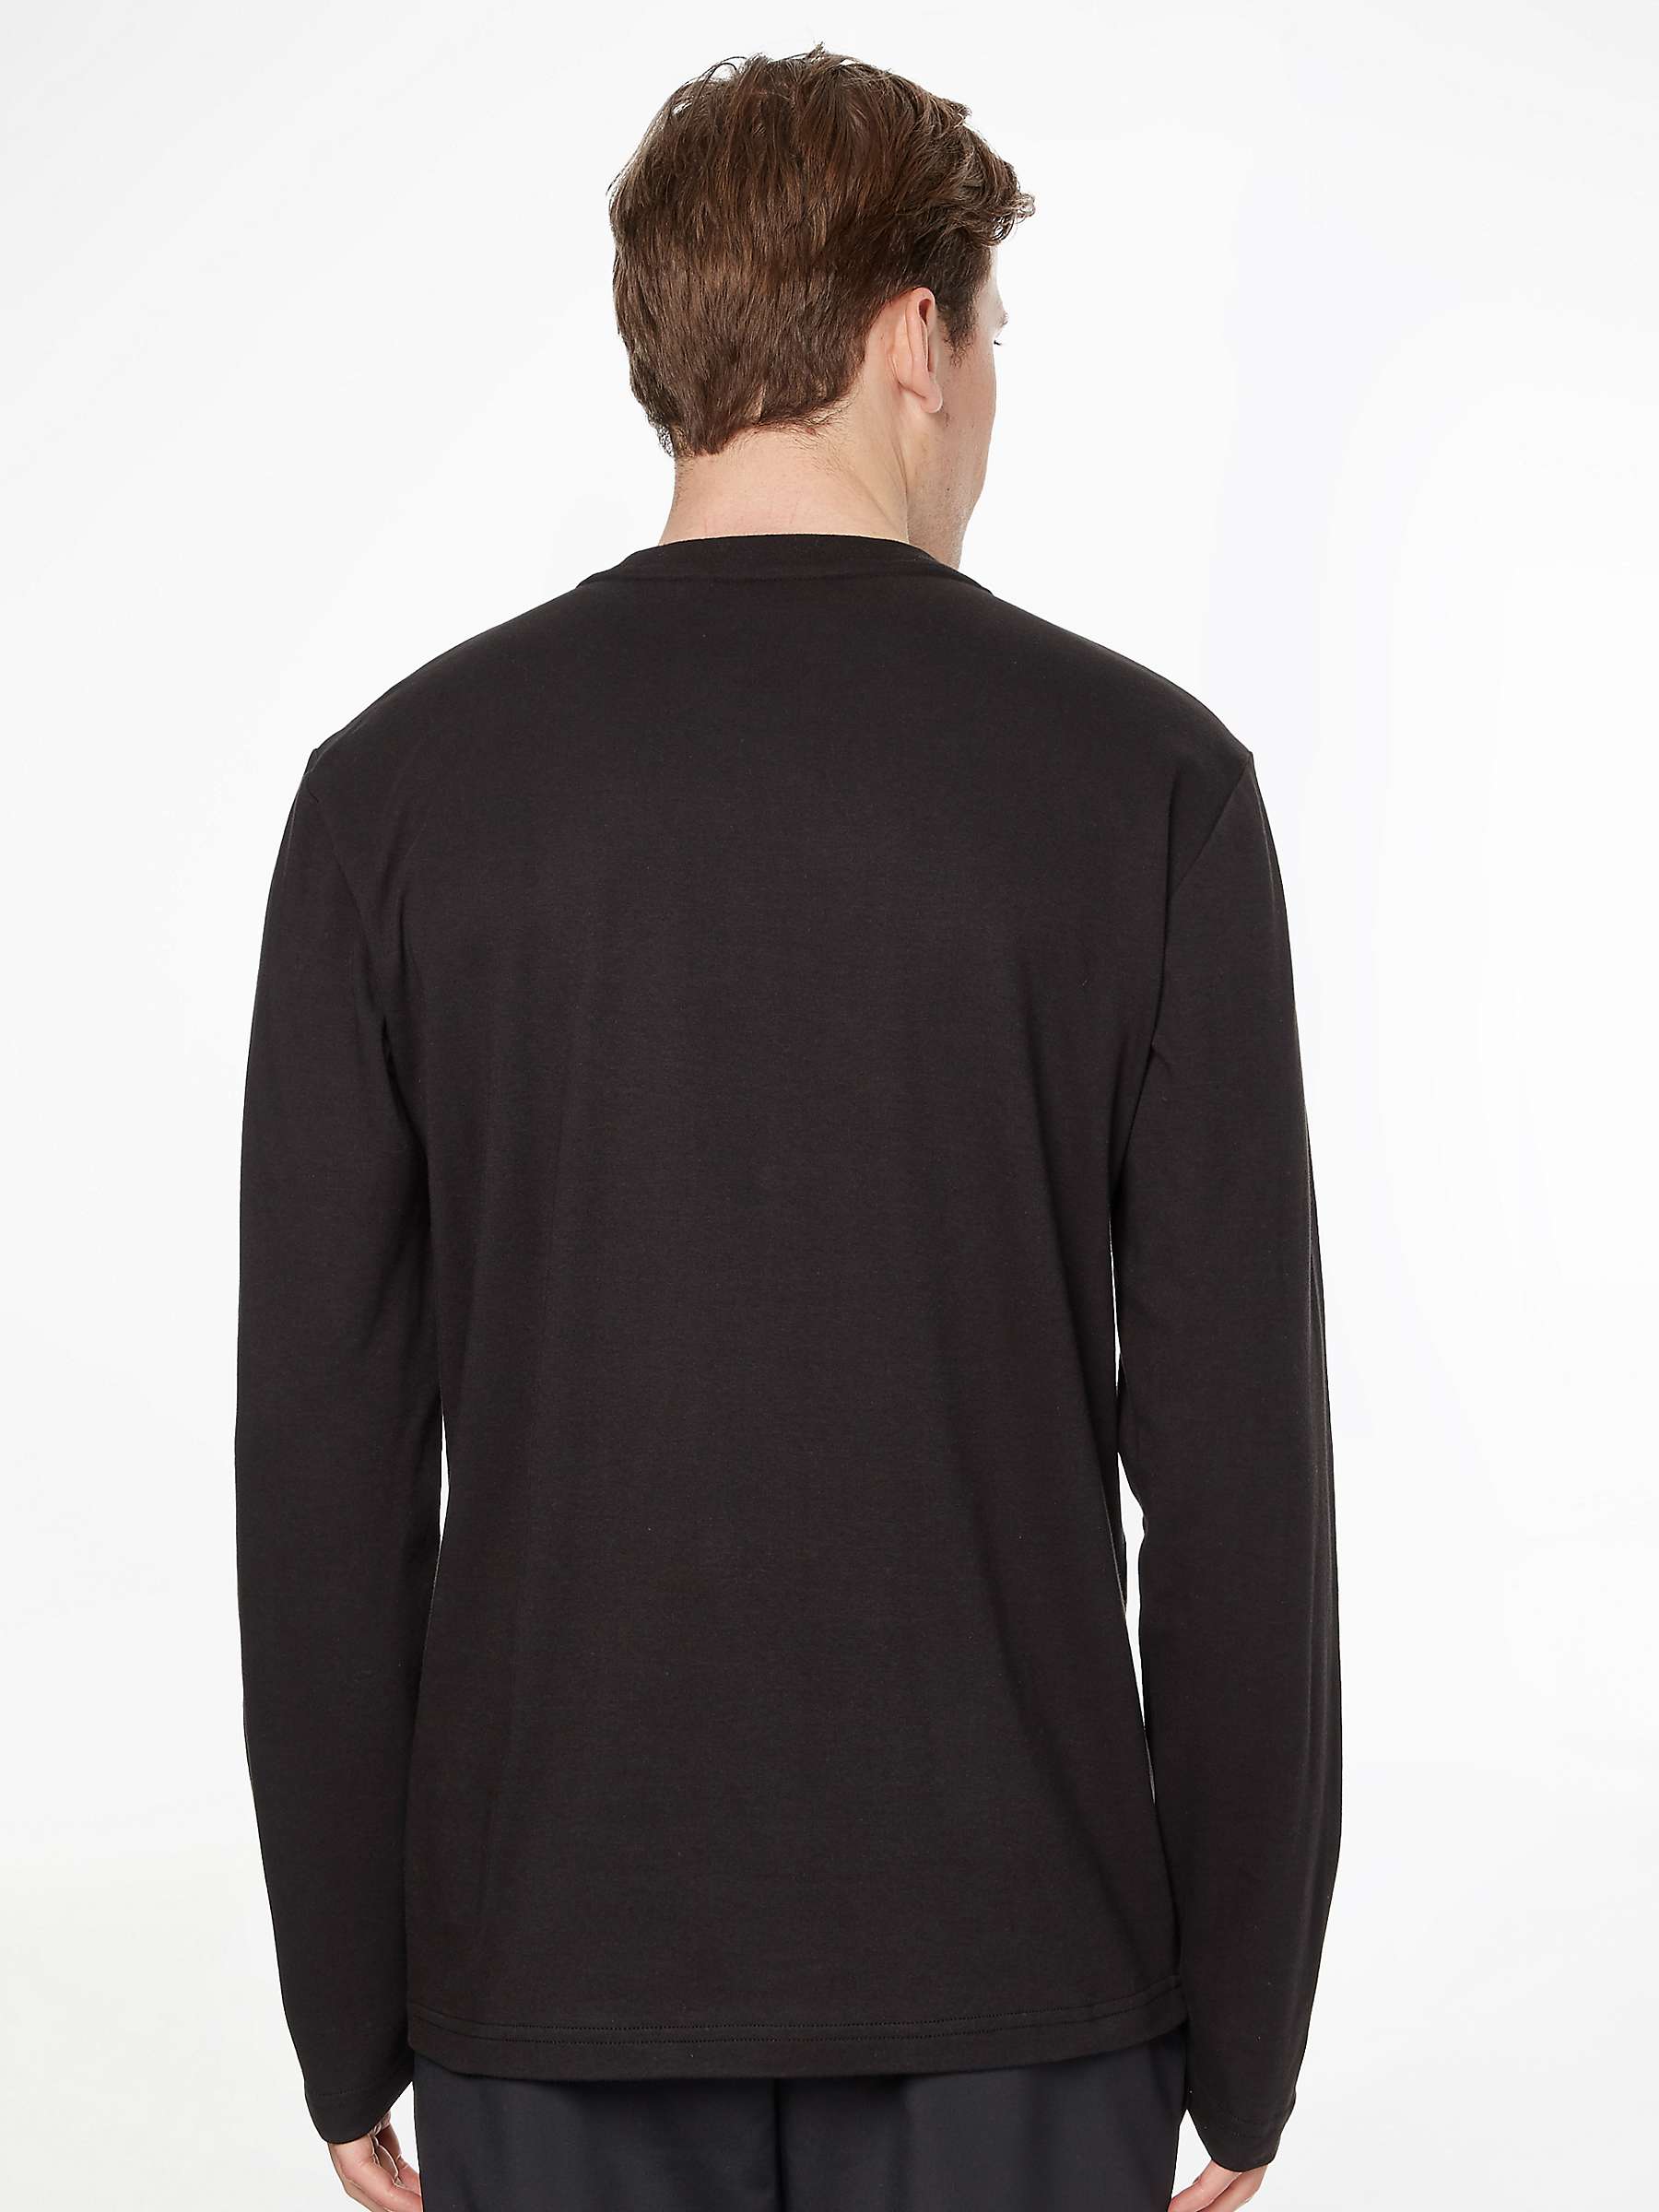 Buy Calvin Klein Interlocking Long Sleeve T-Shirt, CK Black Online at johnlewis.com